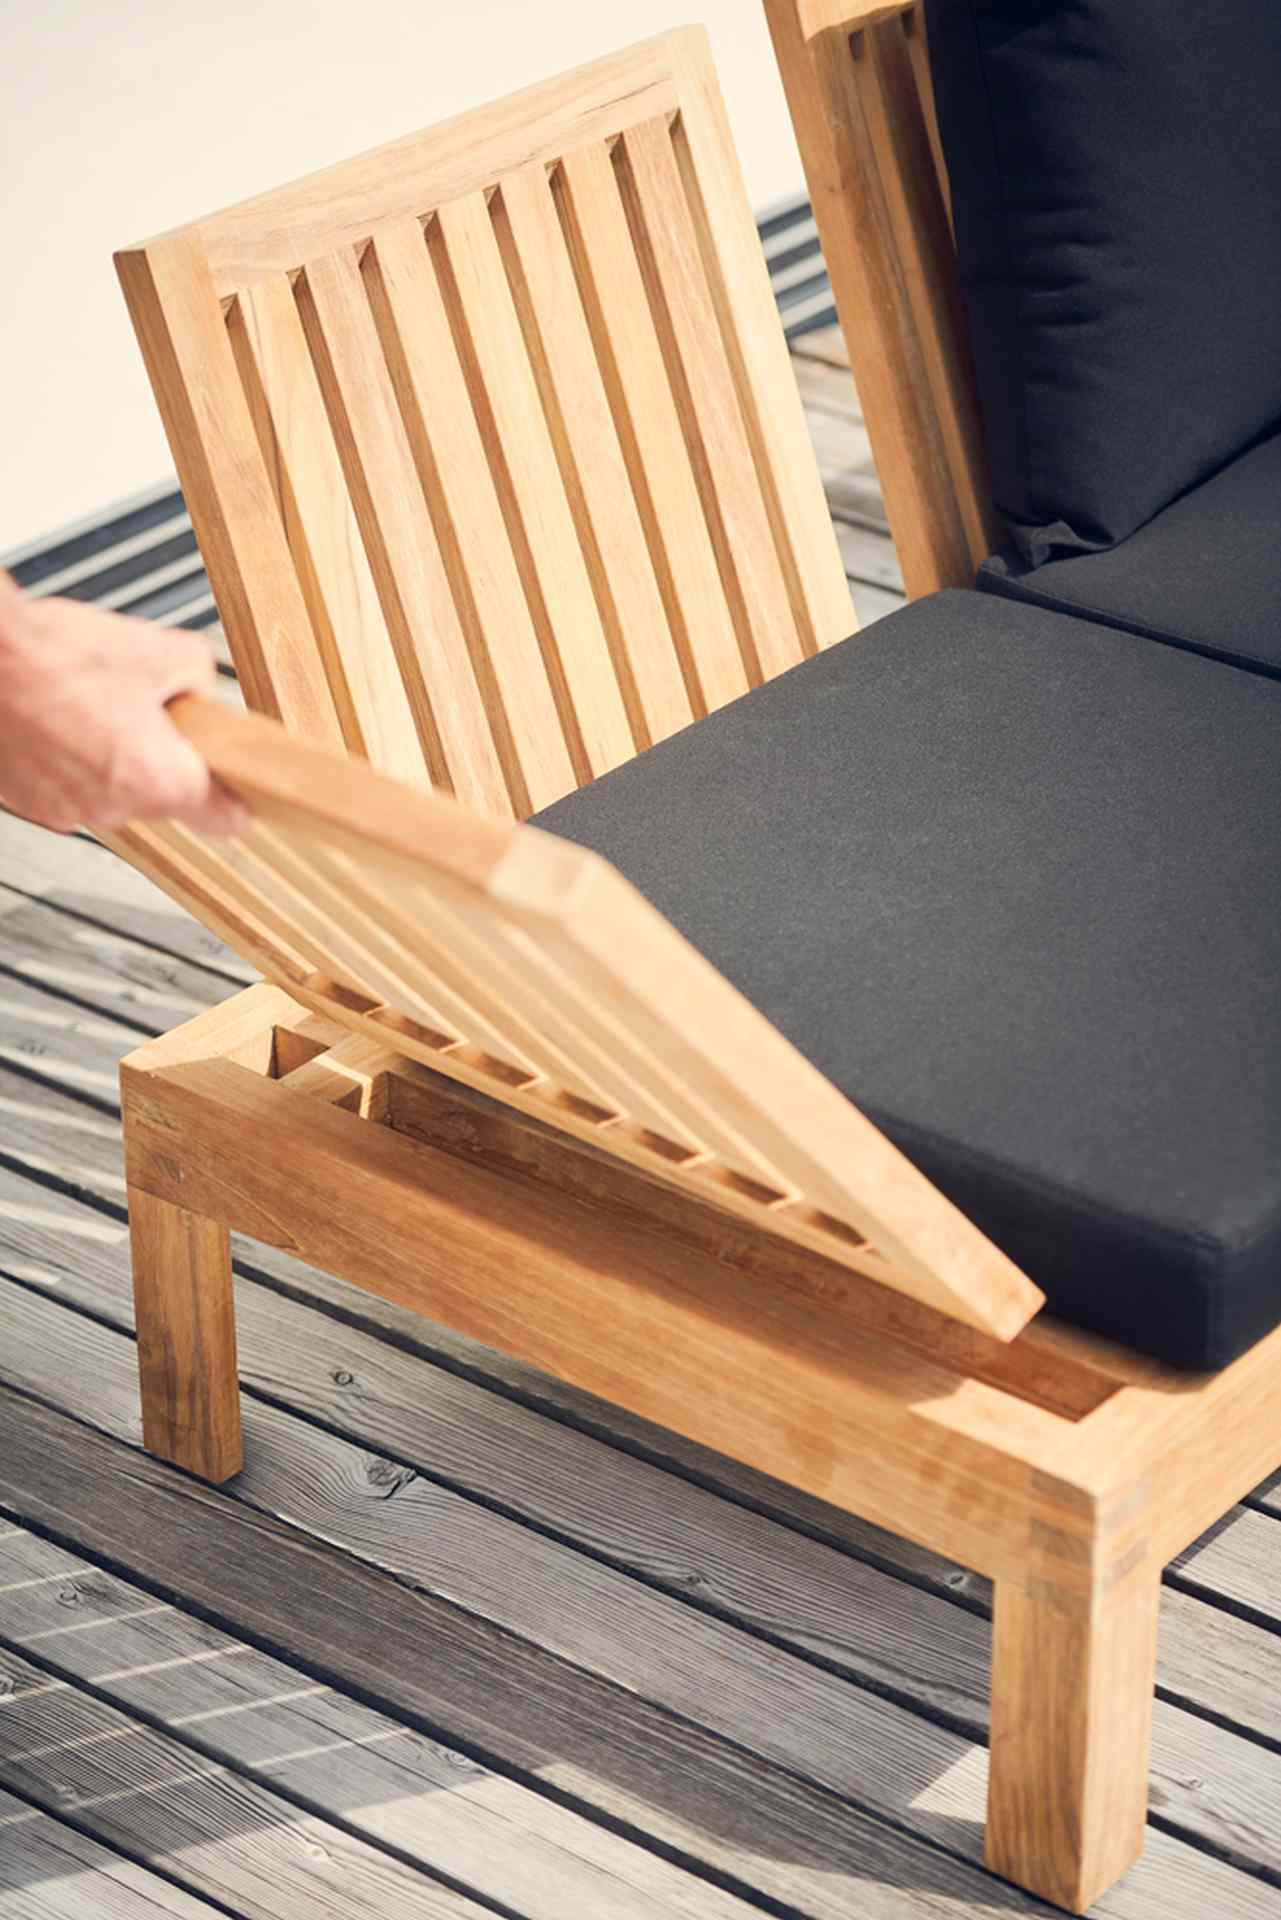 Die Gartenlounge Korfu besteht aus verschiedenen Elementen. Das 2-Sitzer Sofa ist aus Teakholz gefertigt und wurde von der Marke Jan Kurtz designet.